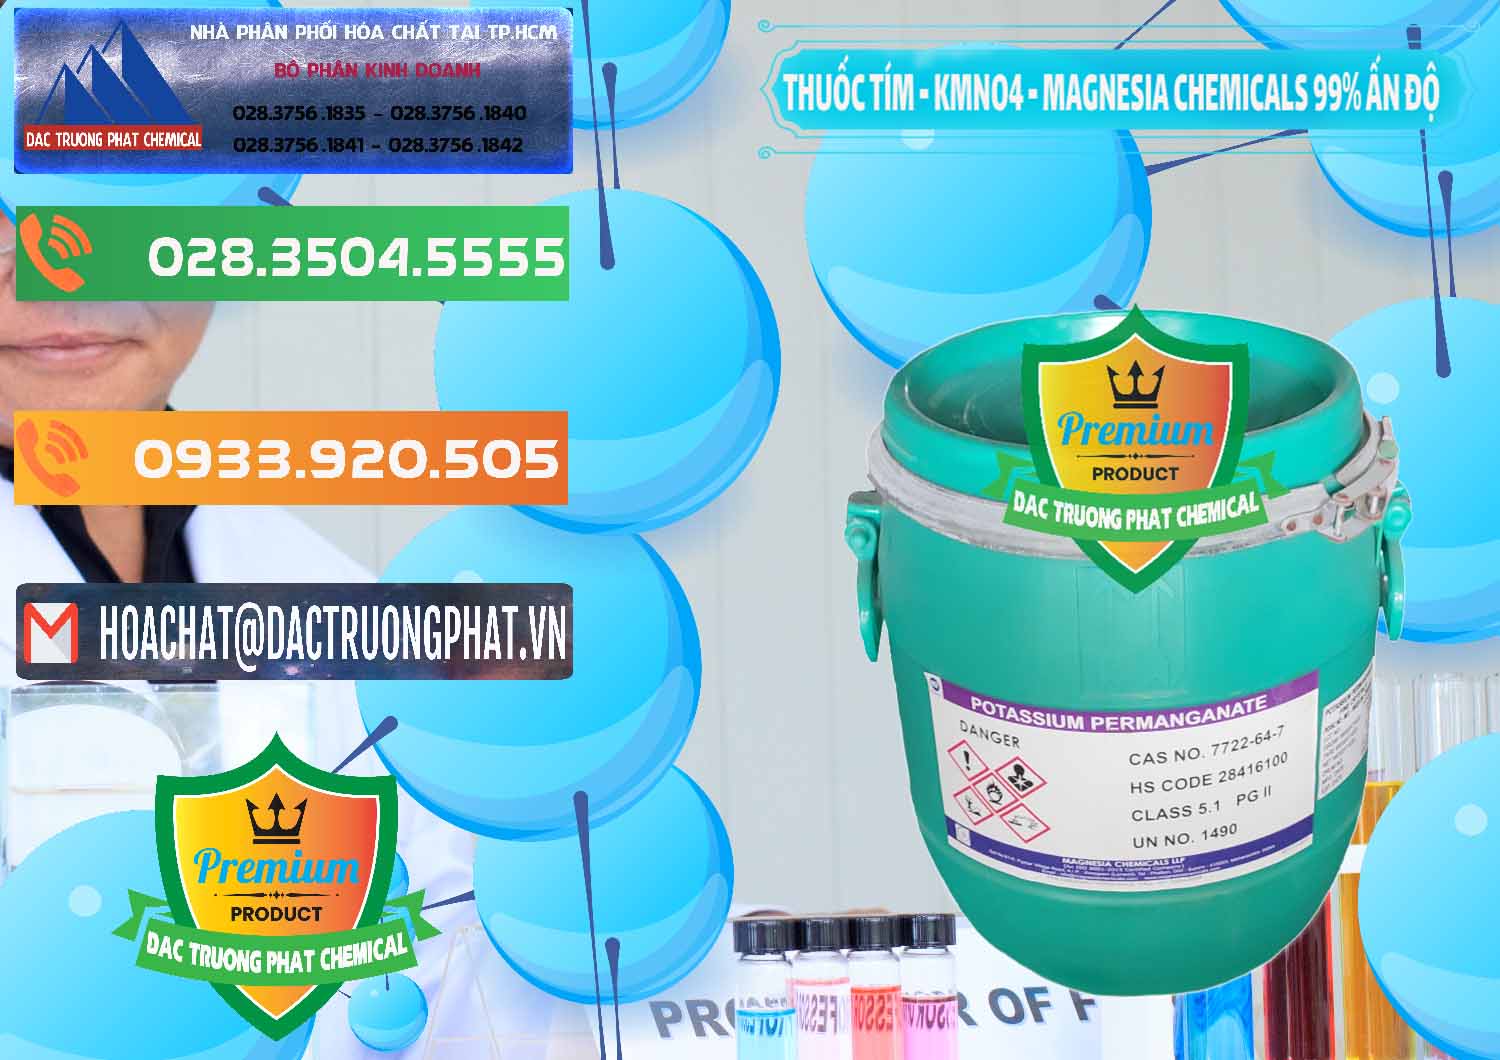 Công ty kinh doanh - bán Thuốc Tím - KMNO4 Magnesia Chemicals 99% Ấn Độ India - 0251 - Công ty chuyên kinh doanh & cung cấp hóa chất tại TP.HCM - hoachatxulynuoc.com.vn